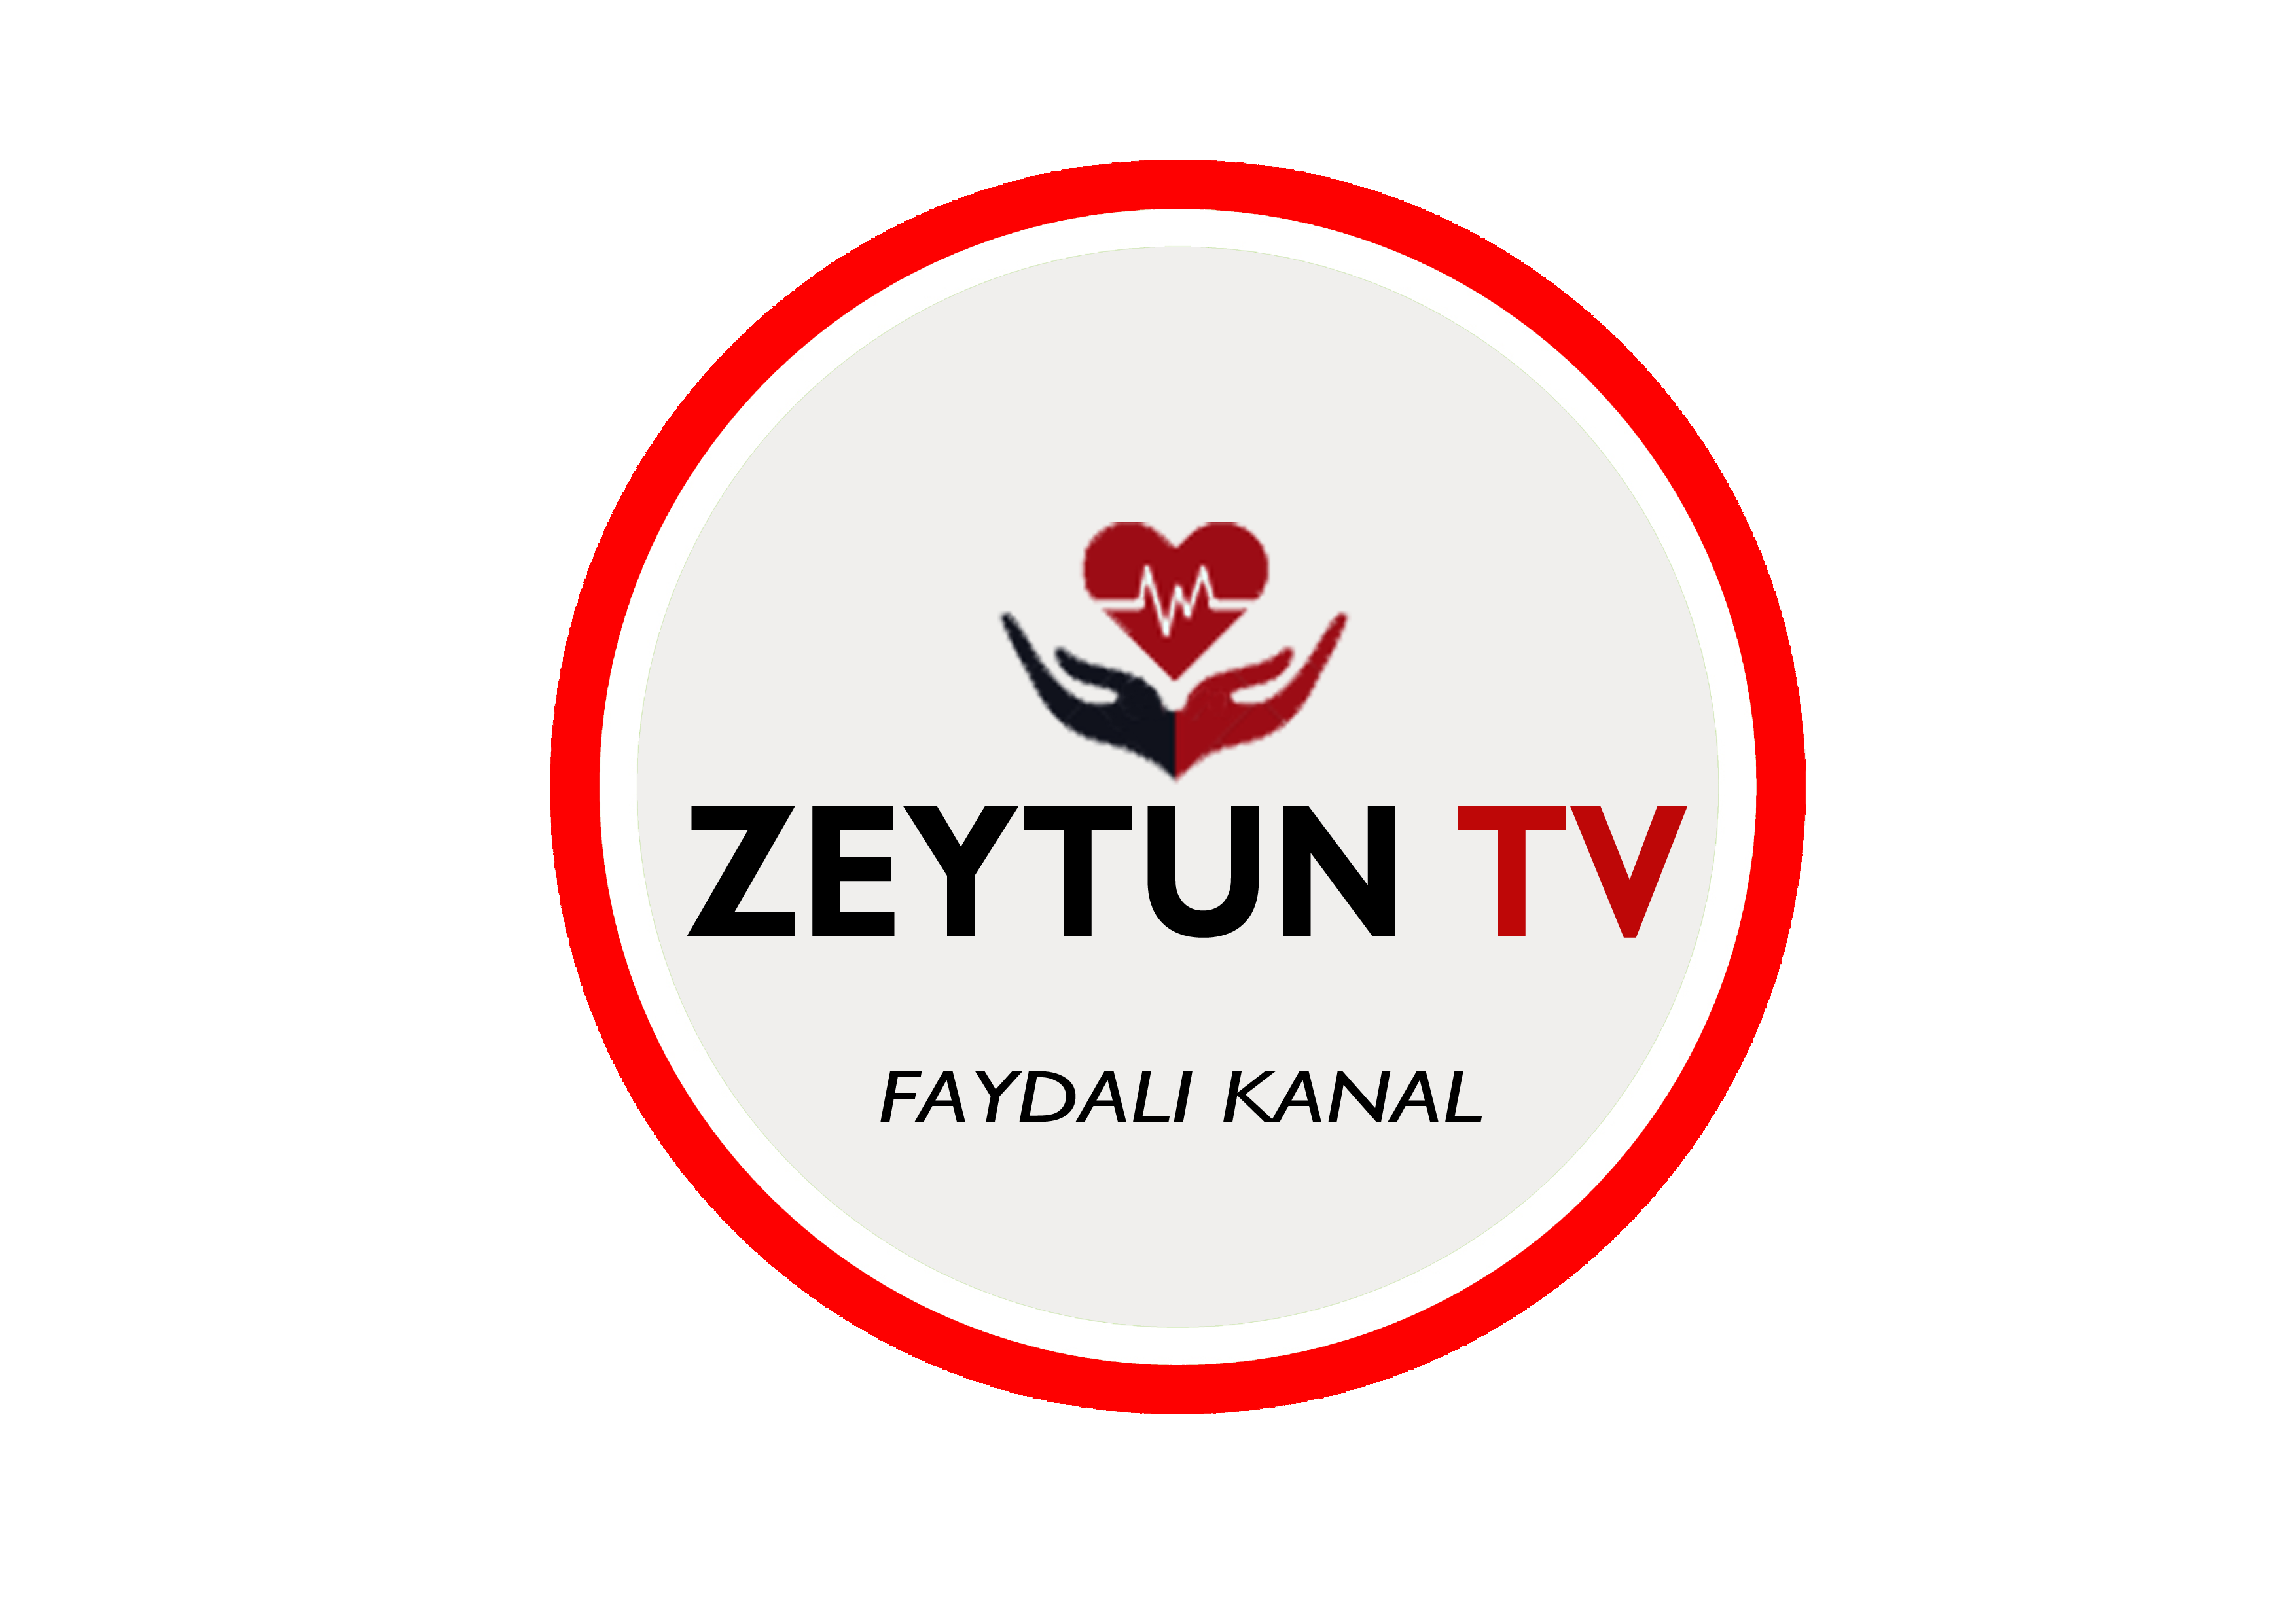 ZEYTUN TV